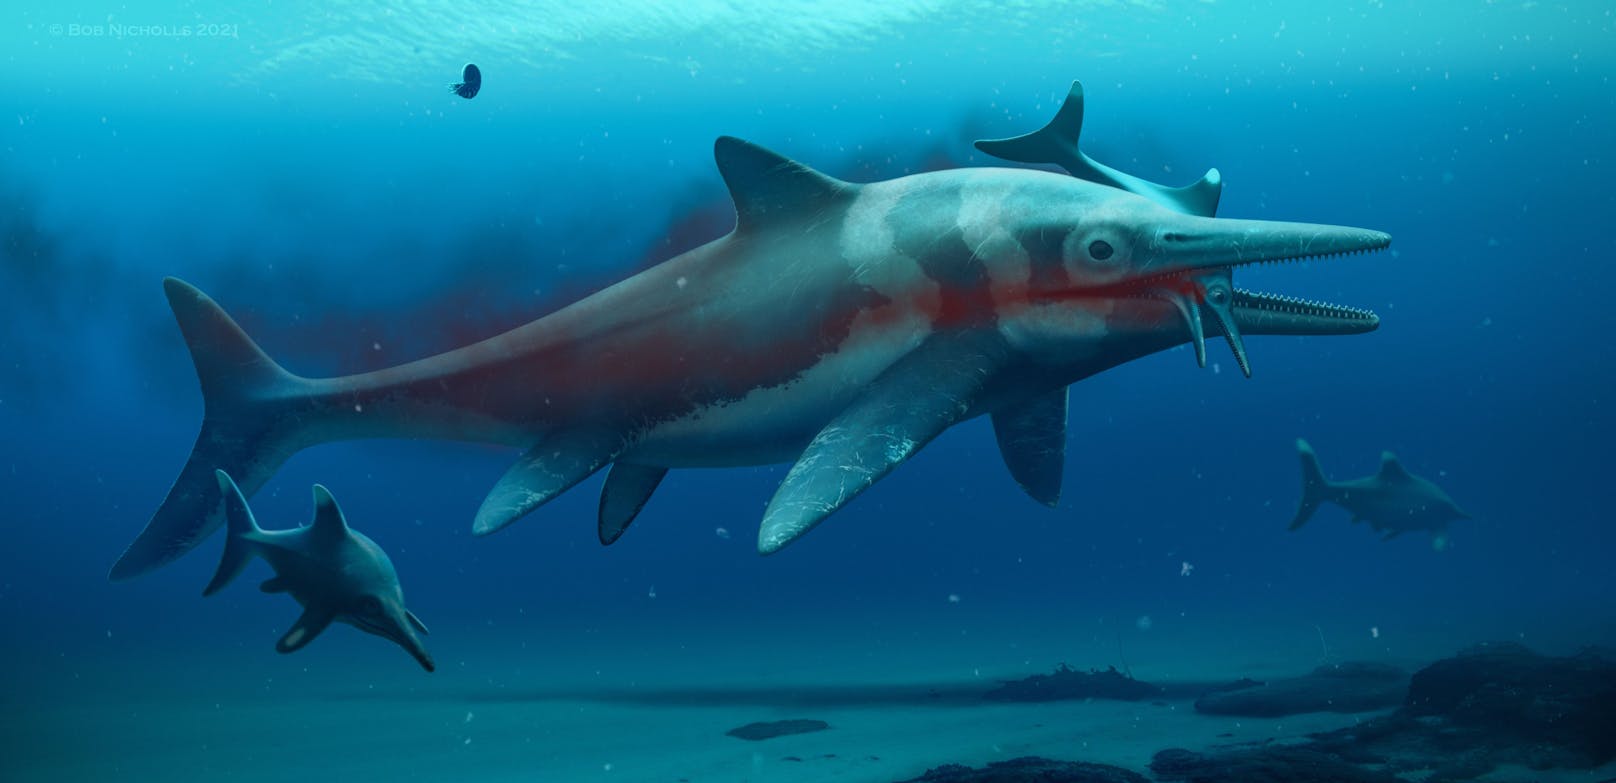 Der "Seedrache von Rutland" könnte möglicherweise ein Ichthyosaurier gewesen sein – ein fischartiges Wesen, deren Körperform an <a href="https://www.heute.at/s/-28876383">Delfine</a> erinnert. Die Spezies ist seit 90 Millionen Jahren ausgestorben.